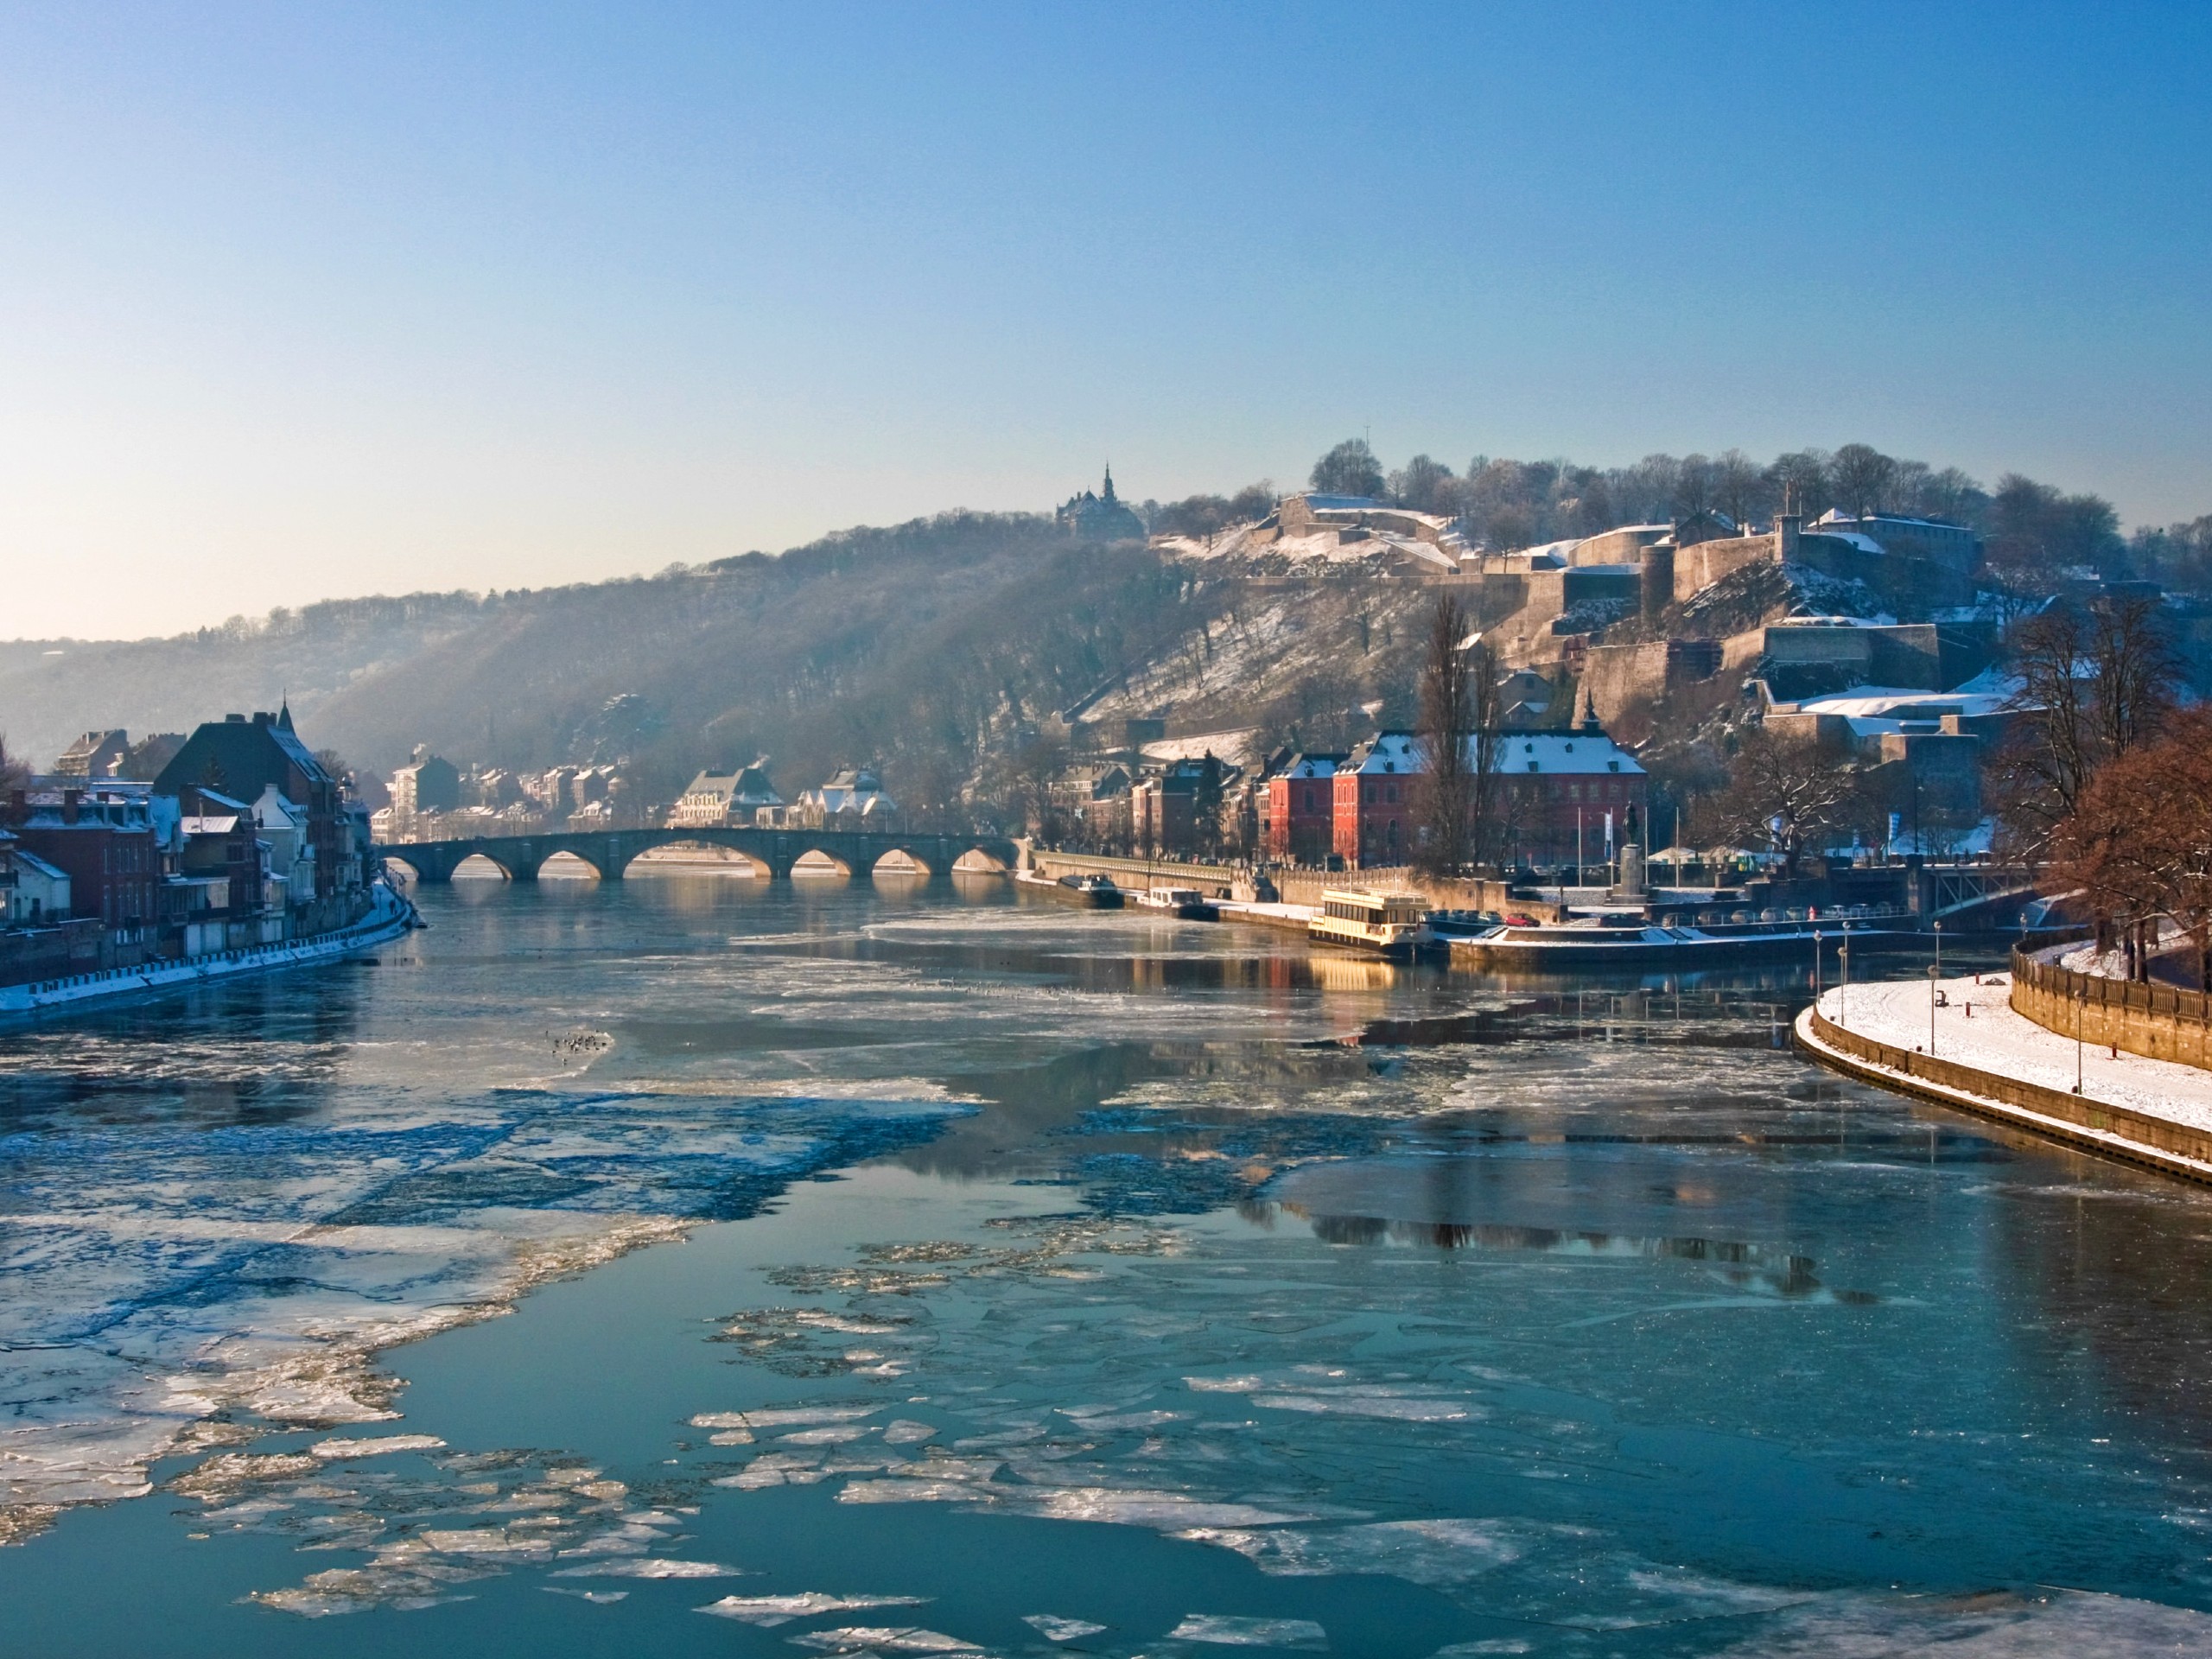 River in Namur